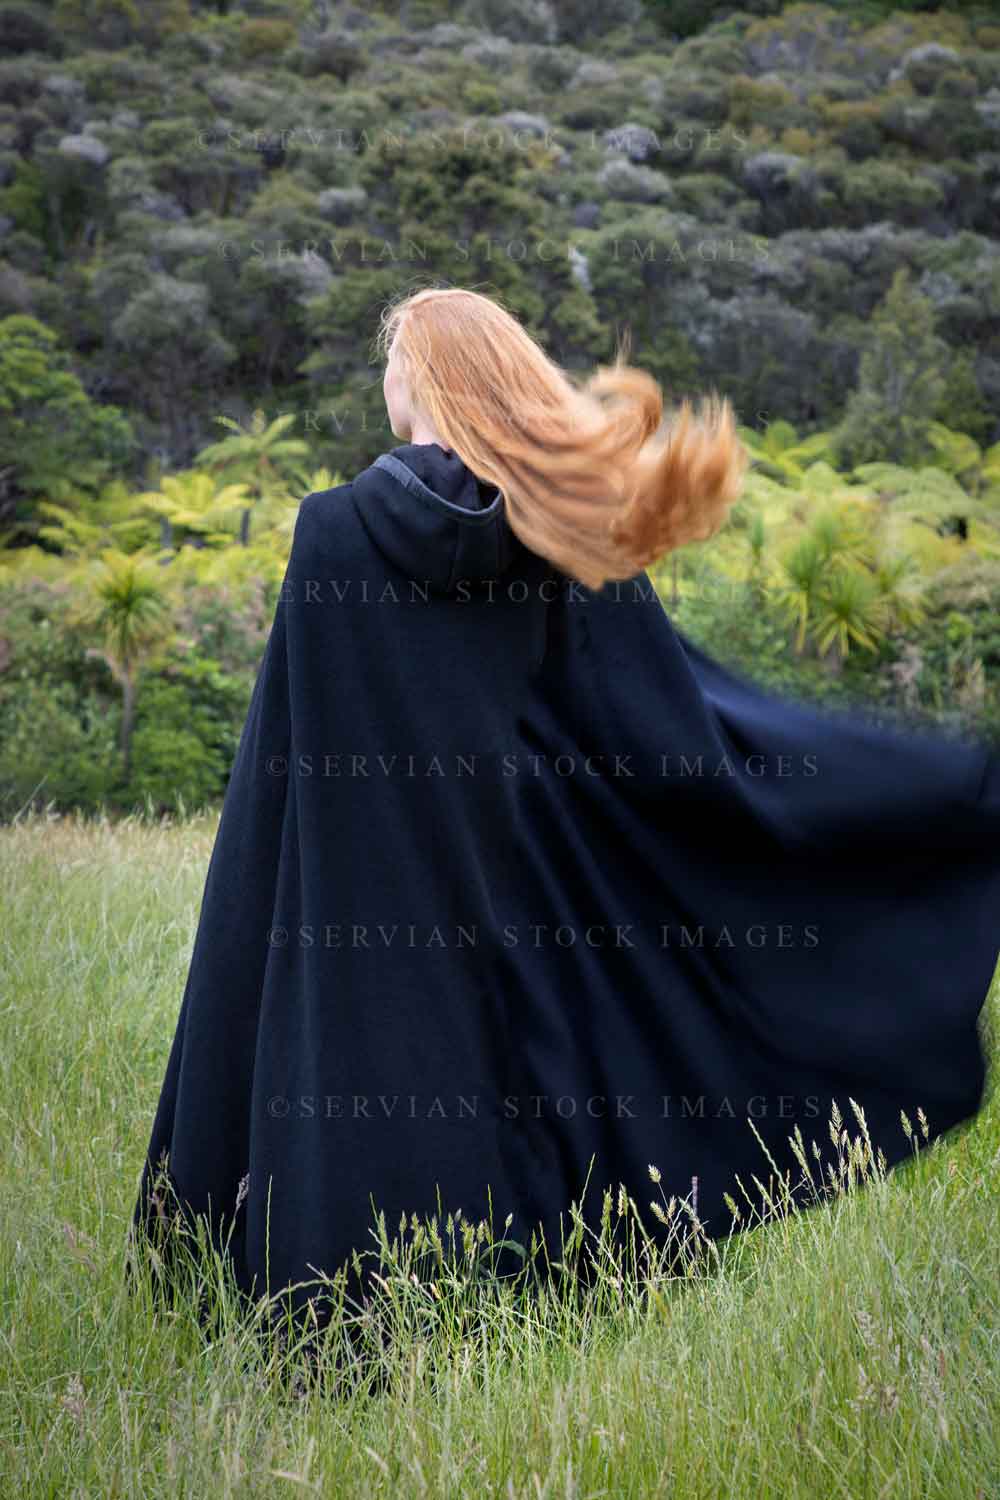 Renaissance woman in a black cloak (Lauren 7430)